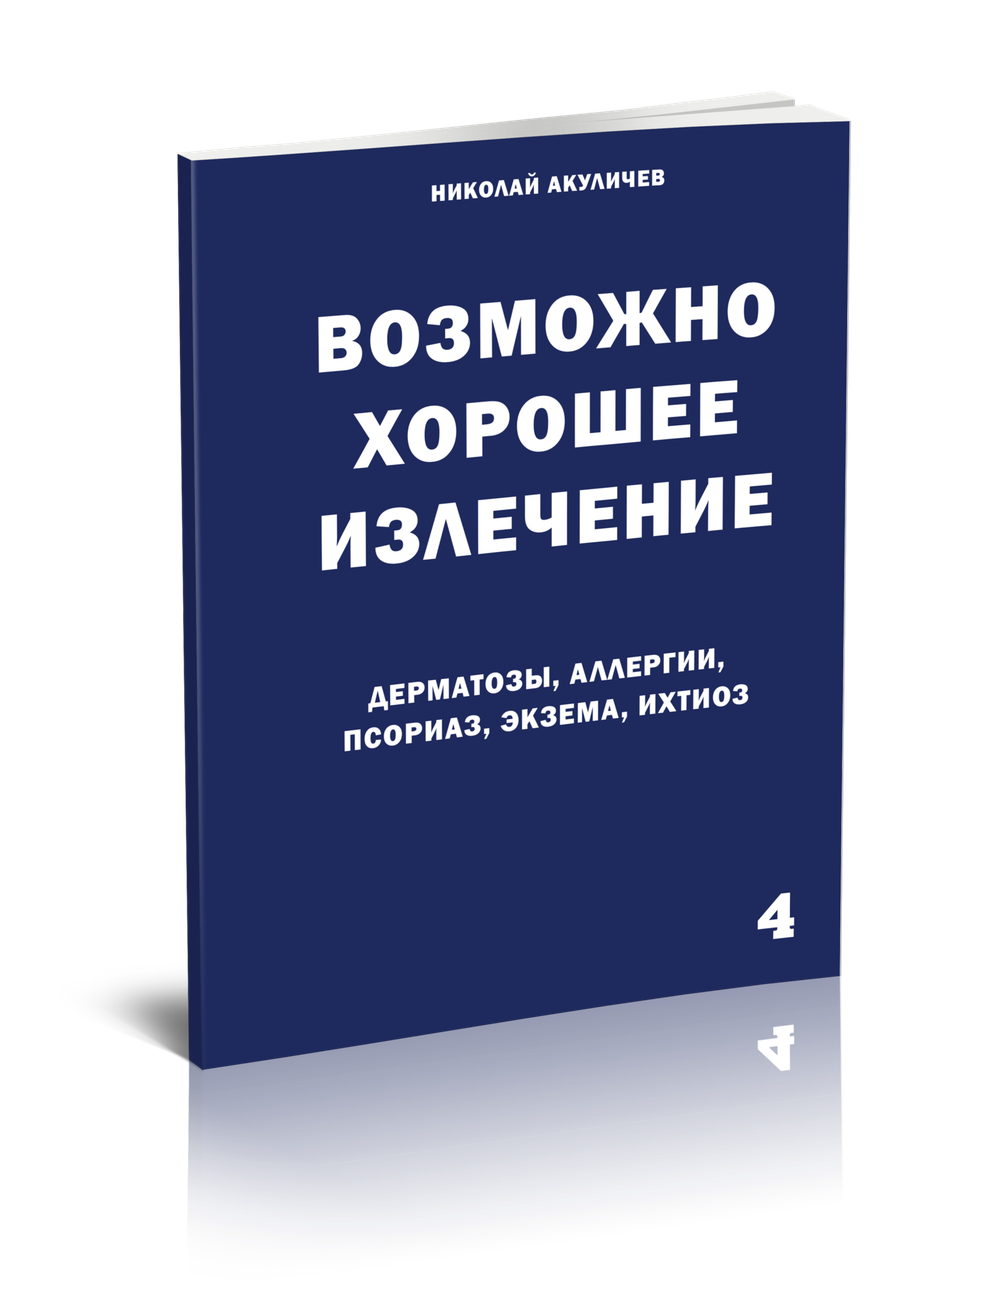 Собрание брошюр Николая Акуличева